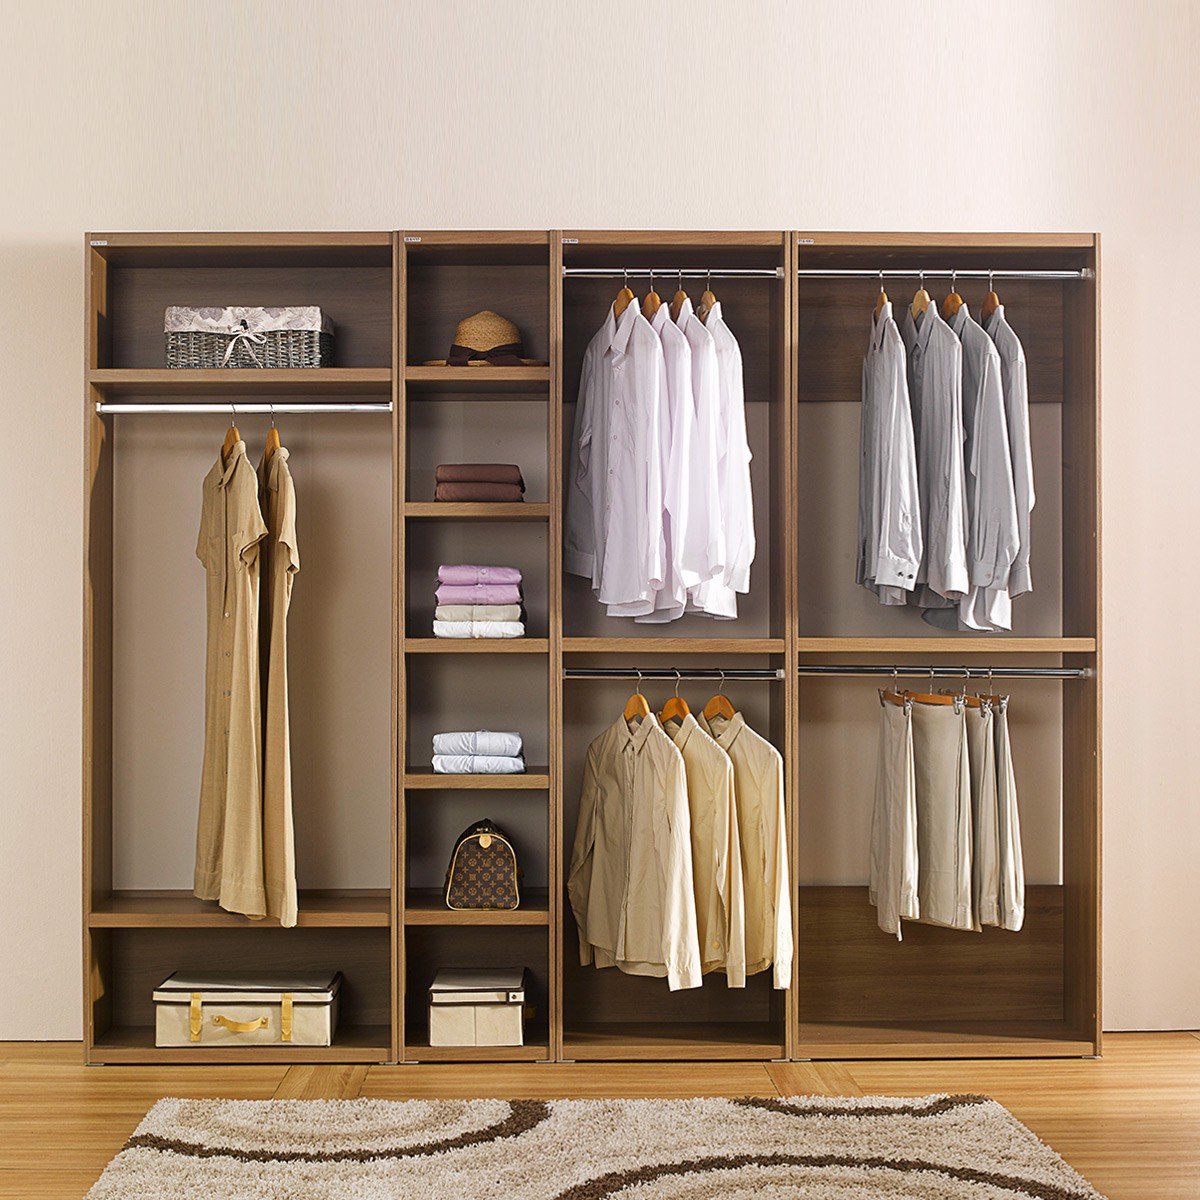 Tủ quần áo gỗ công nghiệp mở có nhiều ngăn kéo và kệ để bạn tổ chức và lưu trữ quần áo